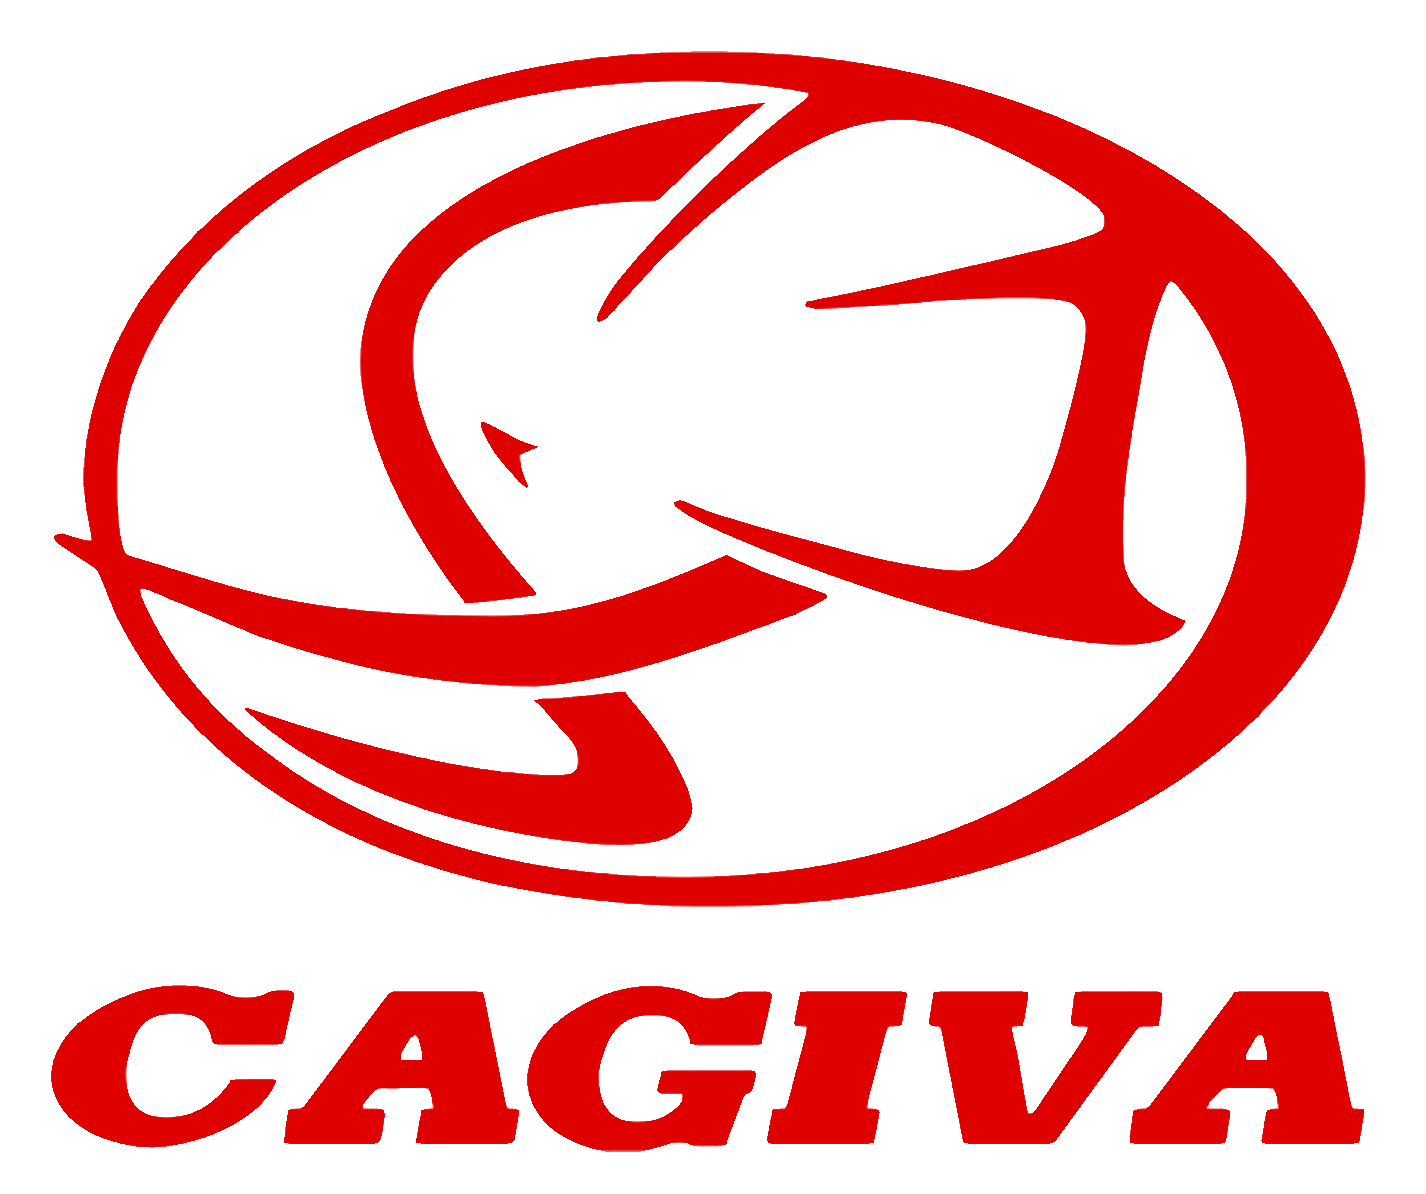 Cagiva 800081152 logo